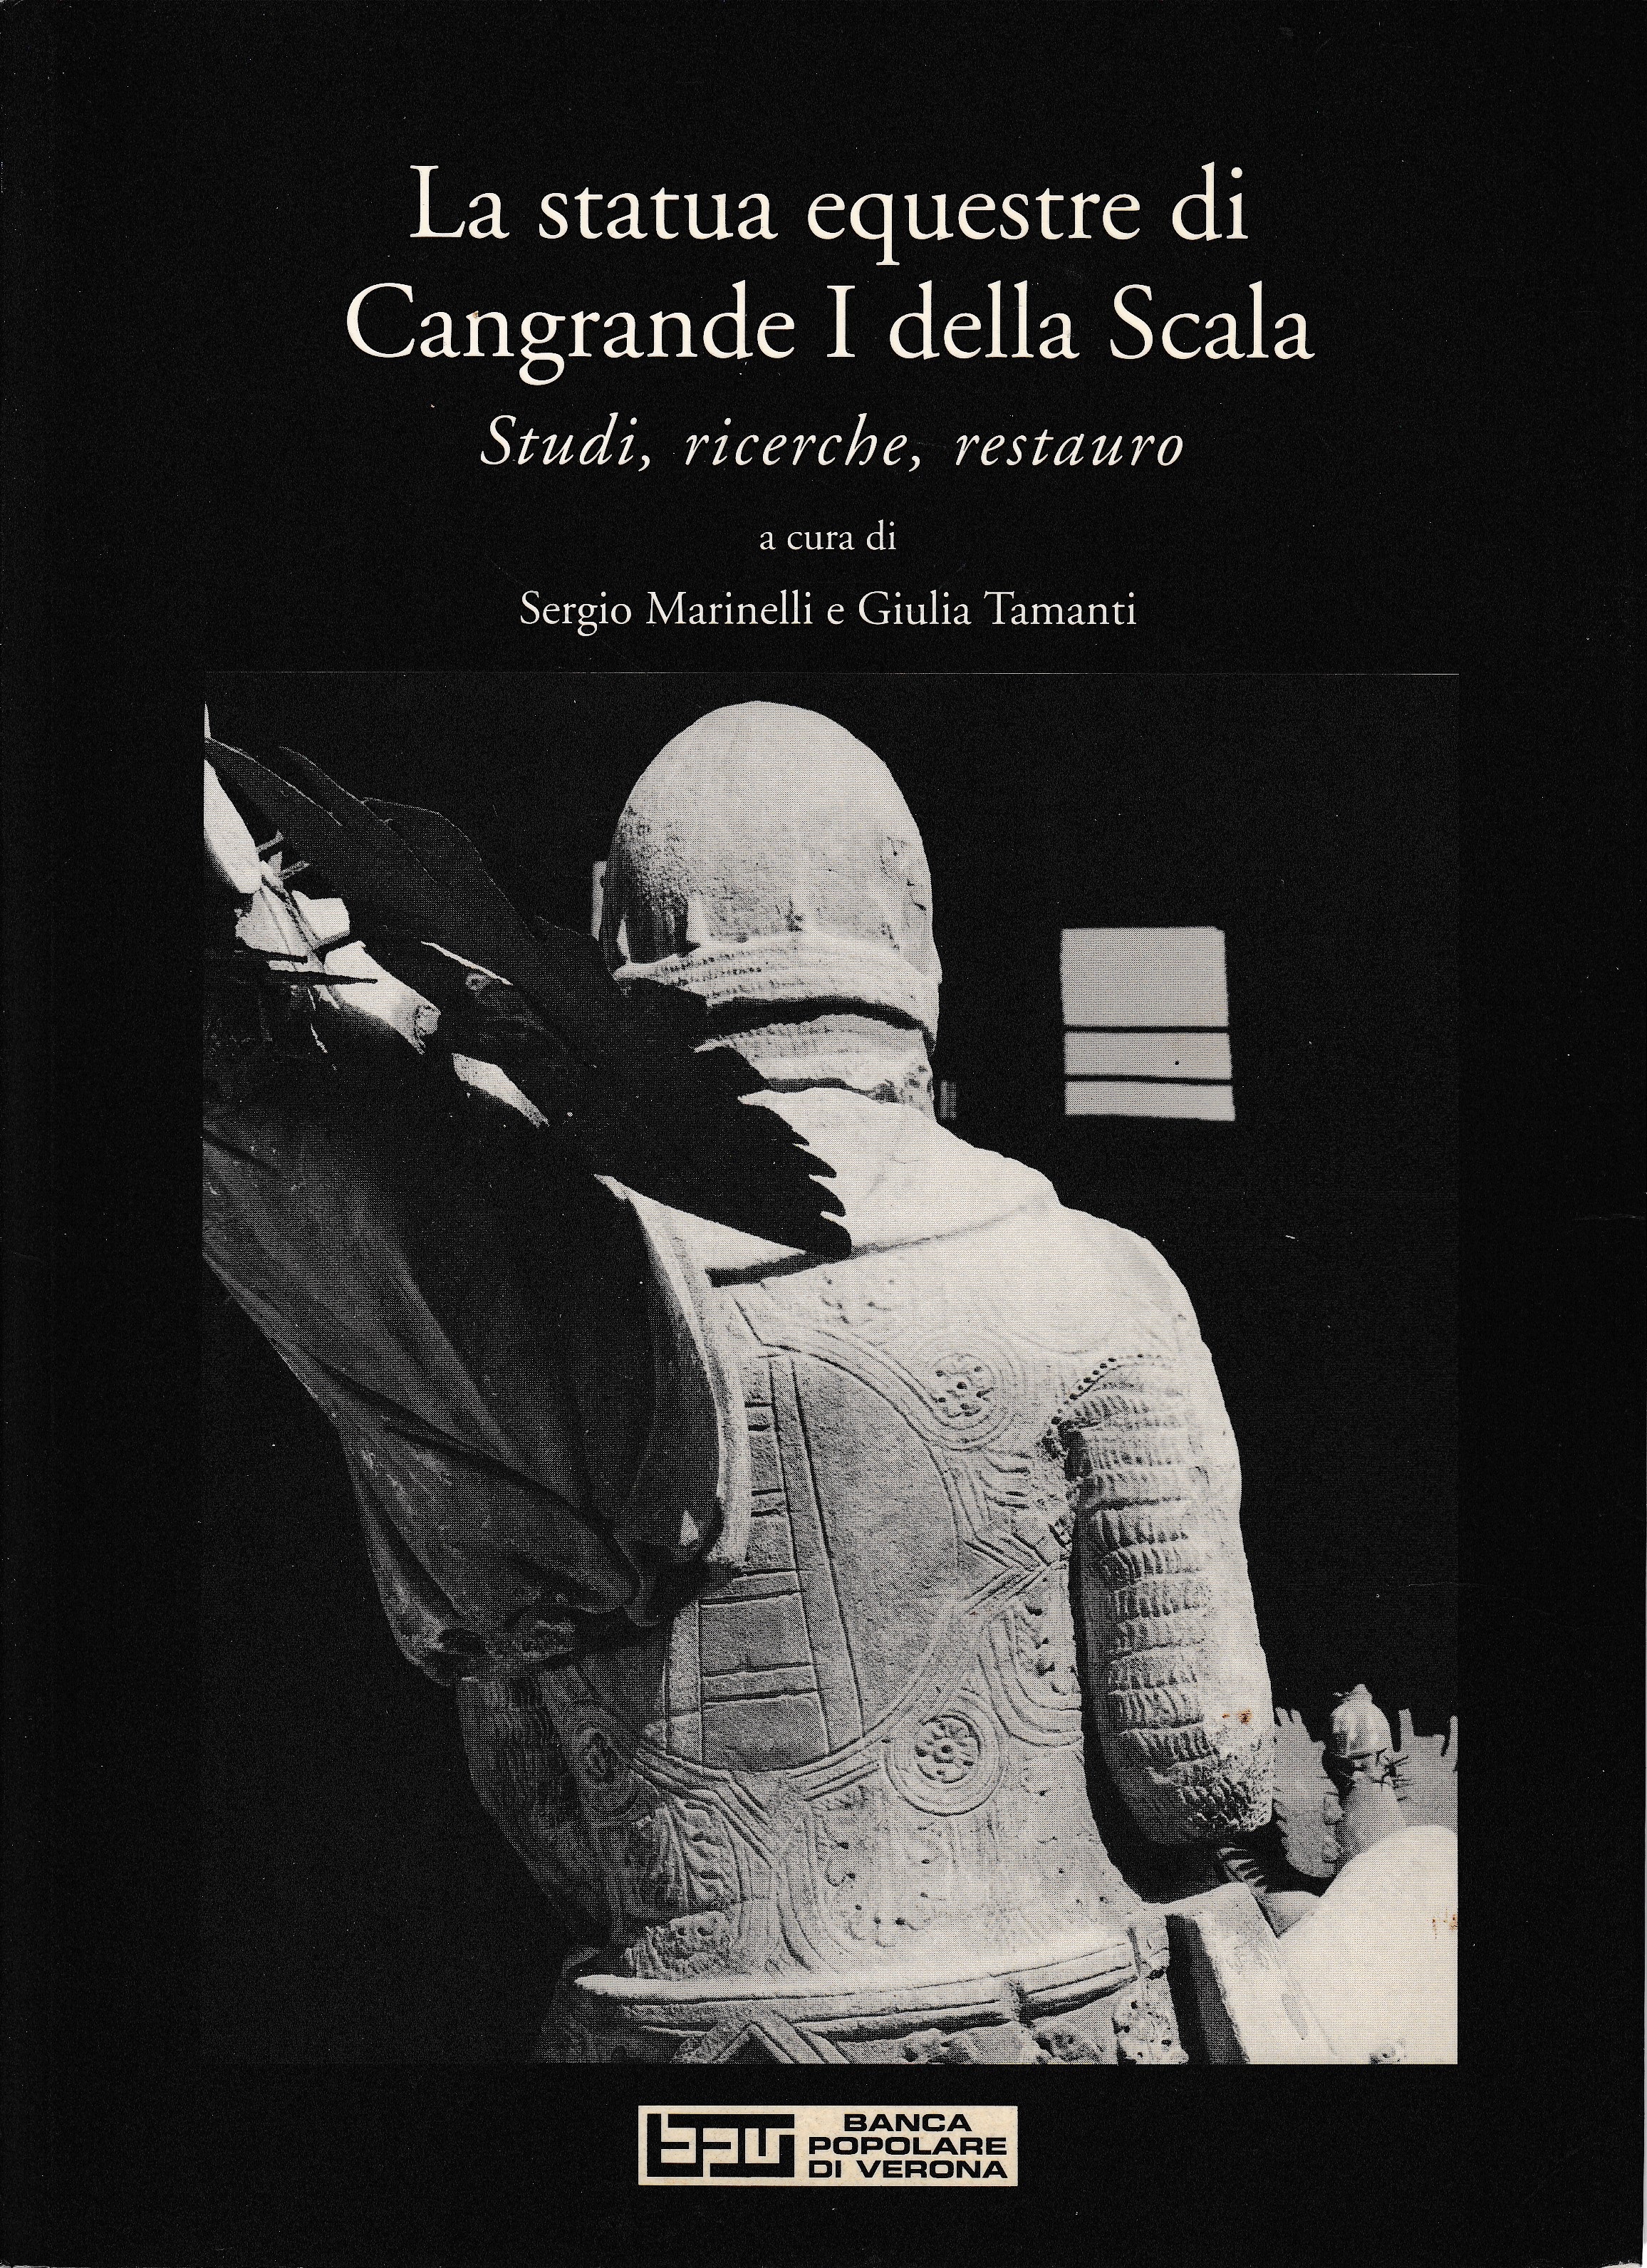 La statua equestre di Cangrande I della Scala. Studi, ricerche, restauro - a cura di S. Marinelli e G. Tamanti